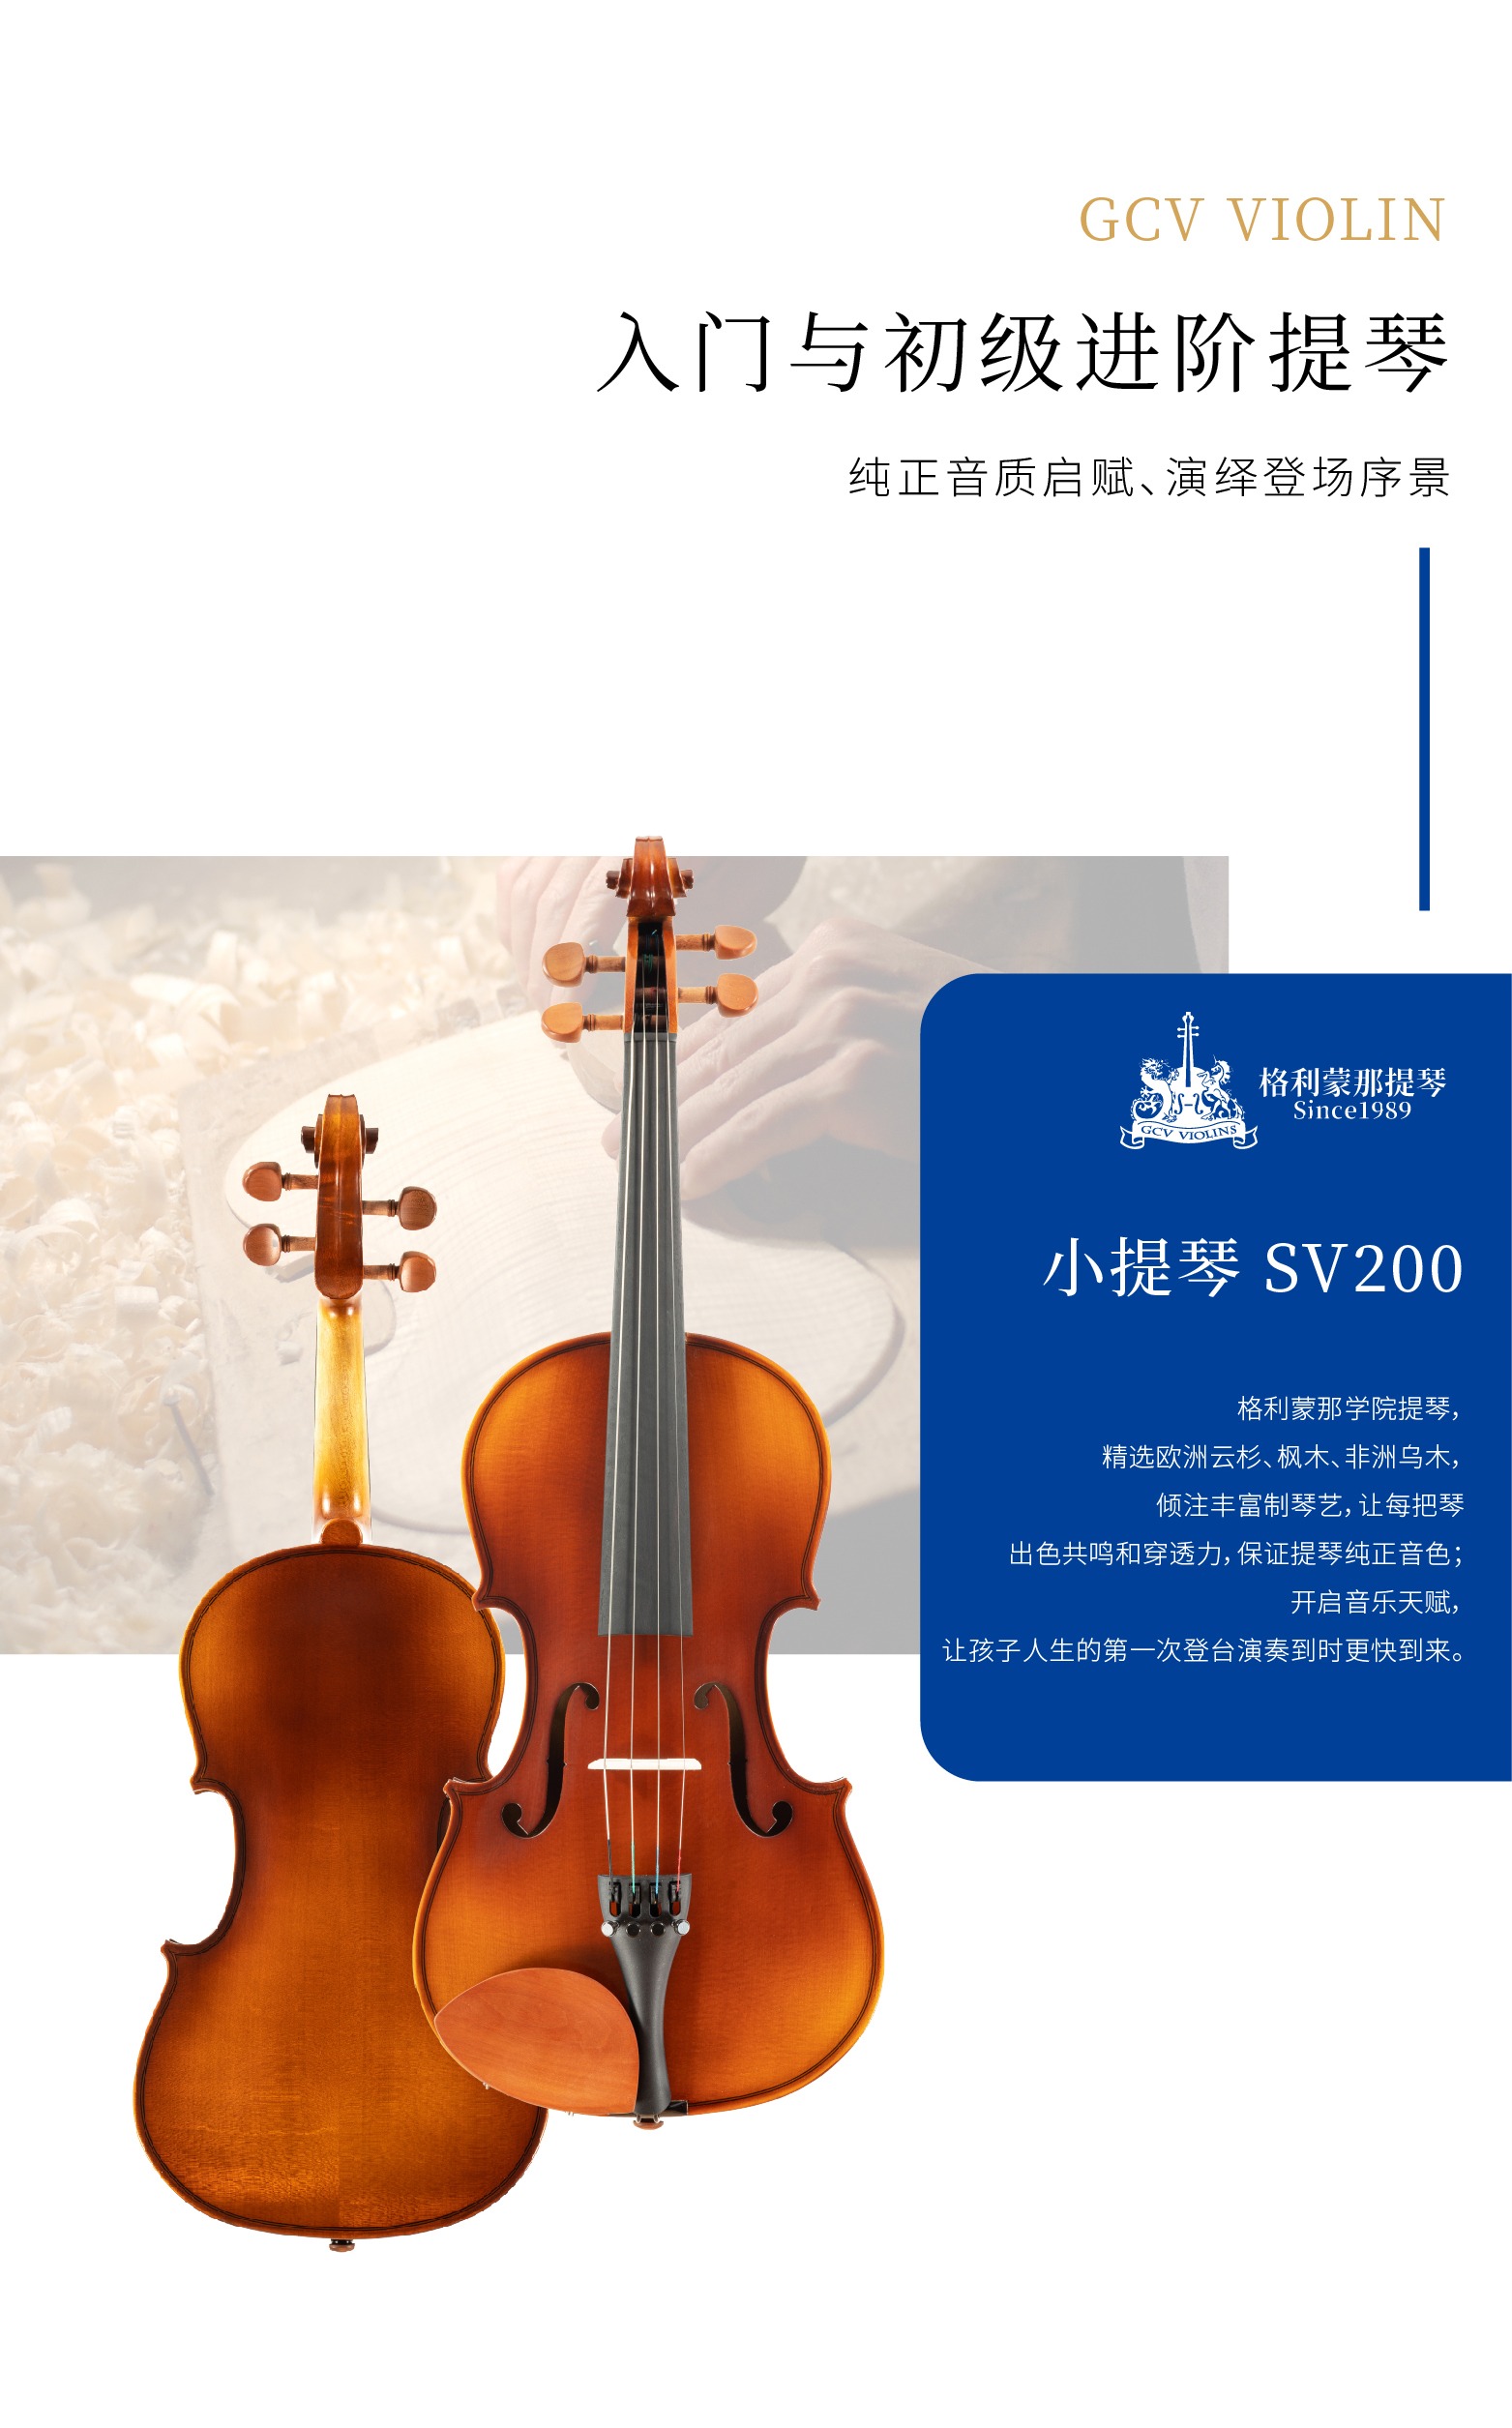 熙珑乐器专营店-详情-v1-2_SV200小提琴_PC-副本-2_02.jpg